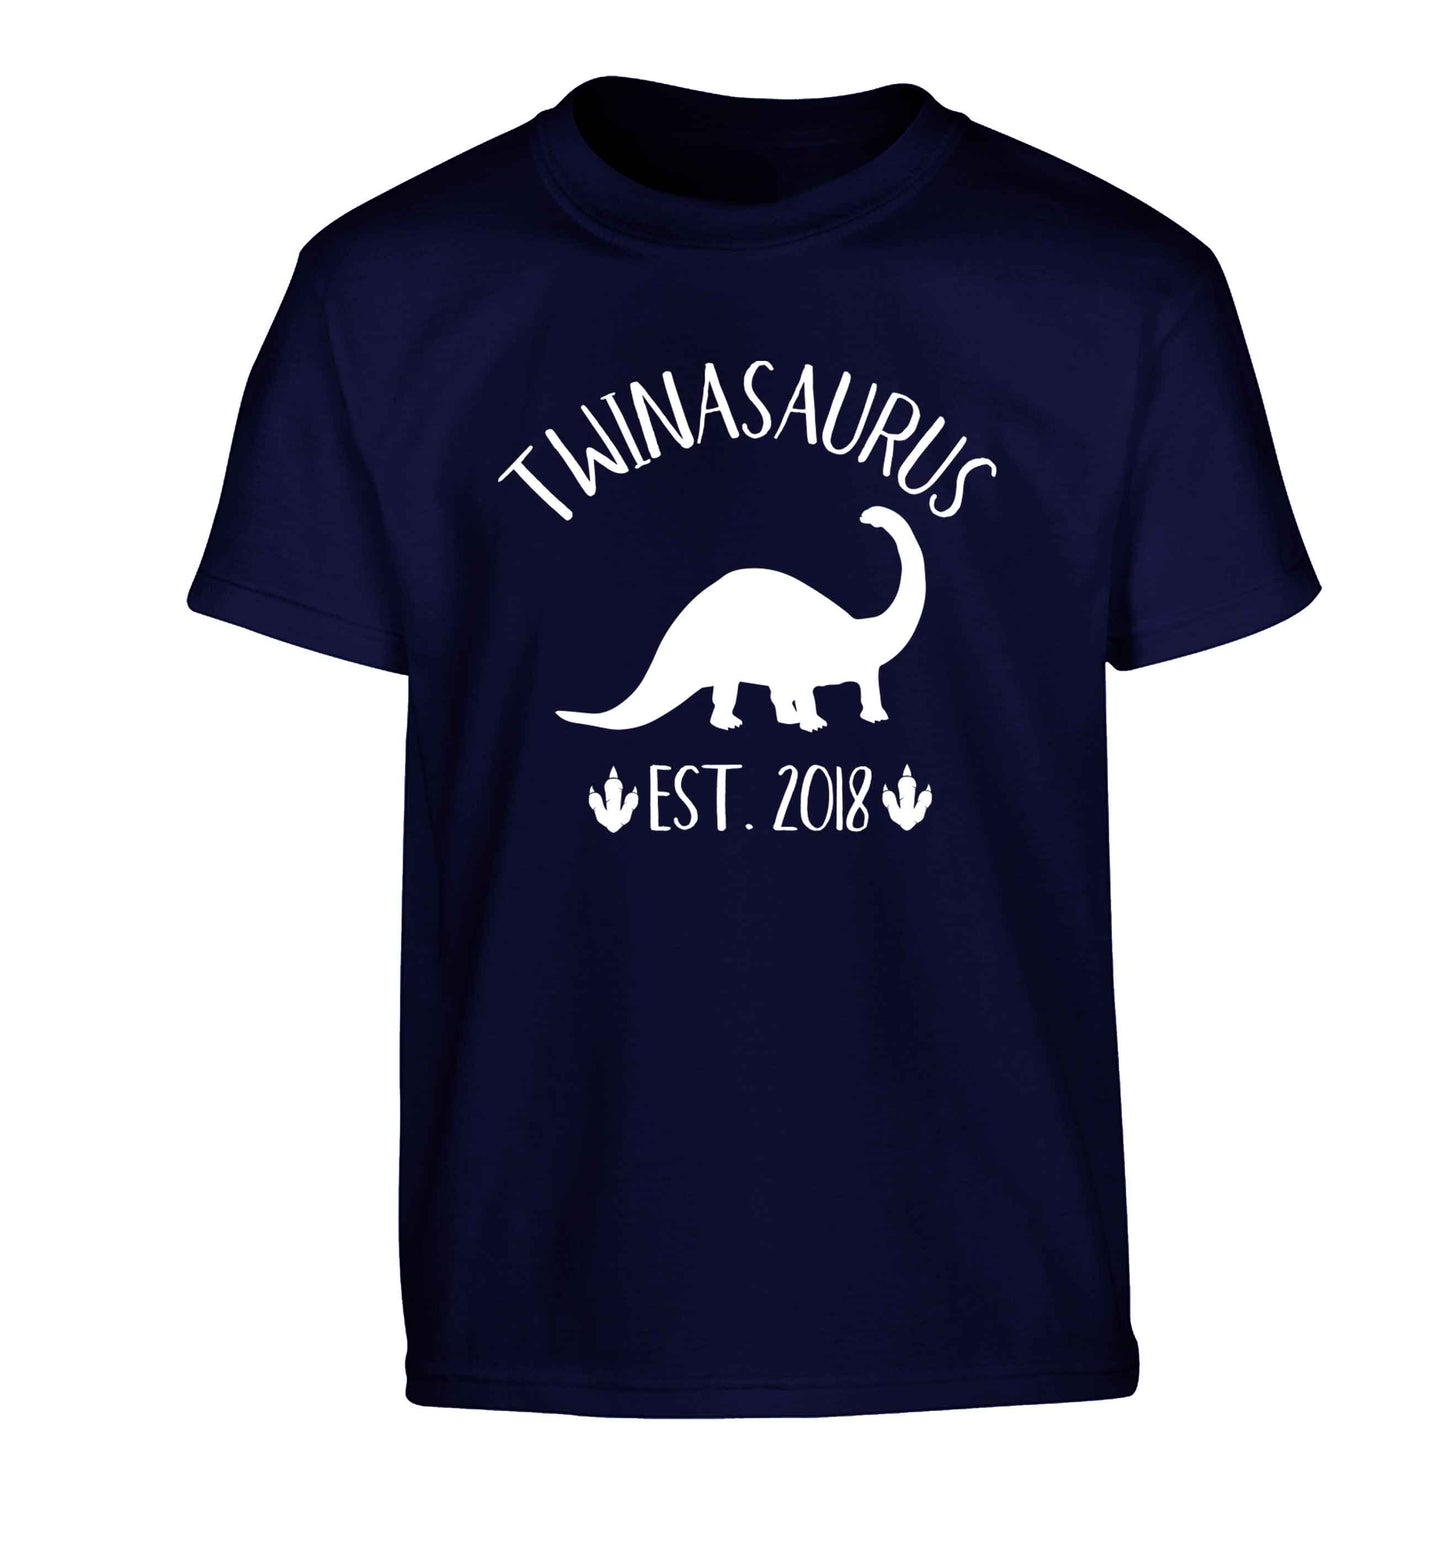 Personalised twinasaurus since (custom date) Children's navy Tshirt 12-13 Years